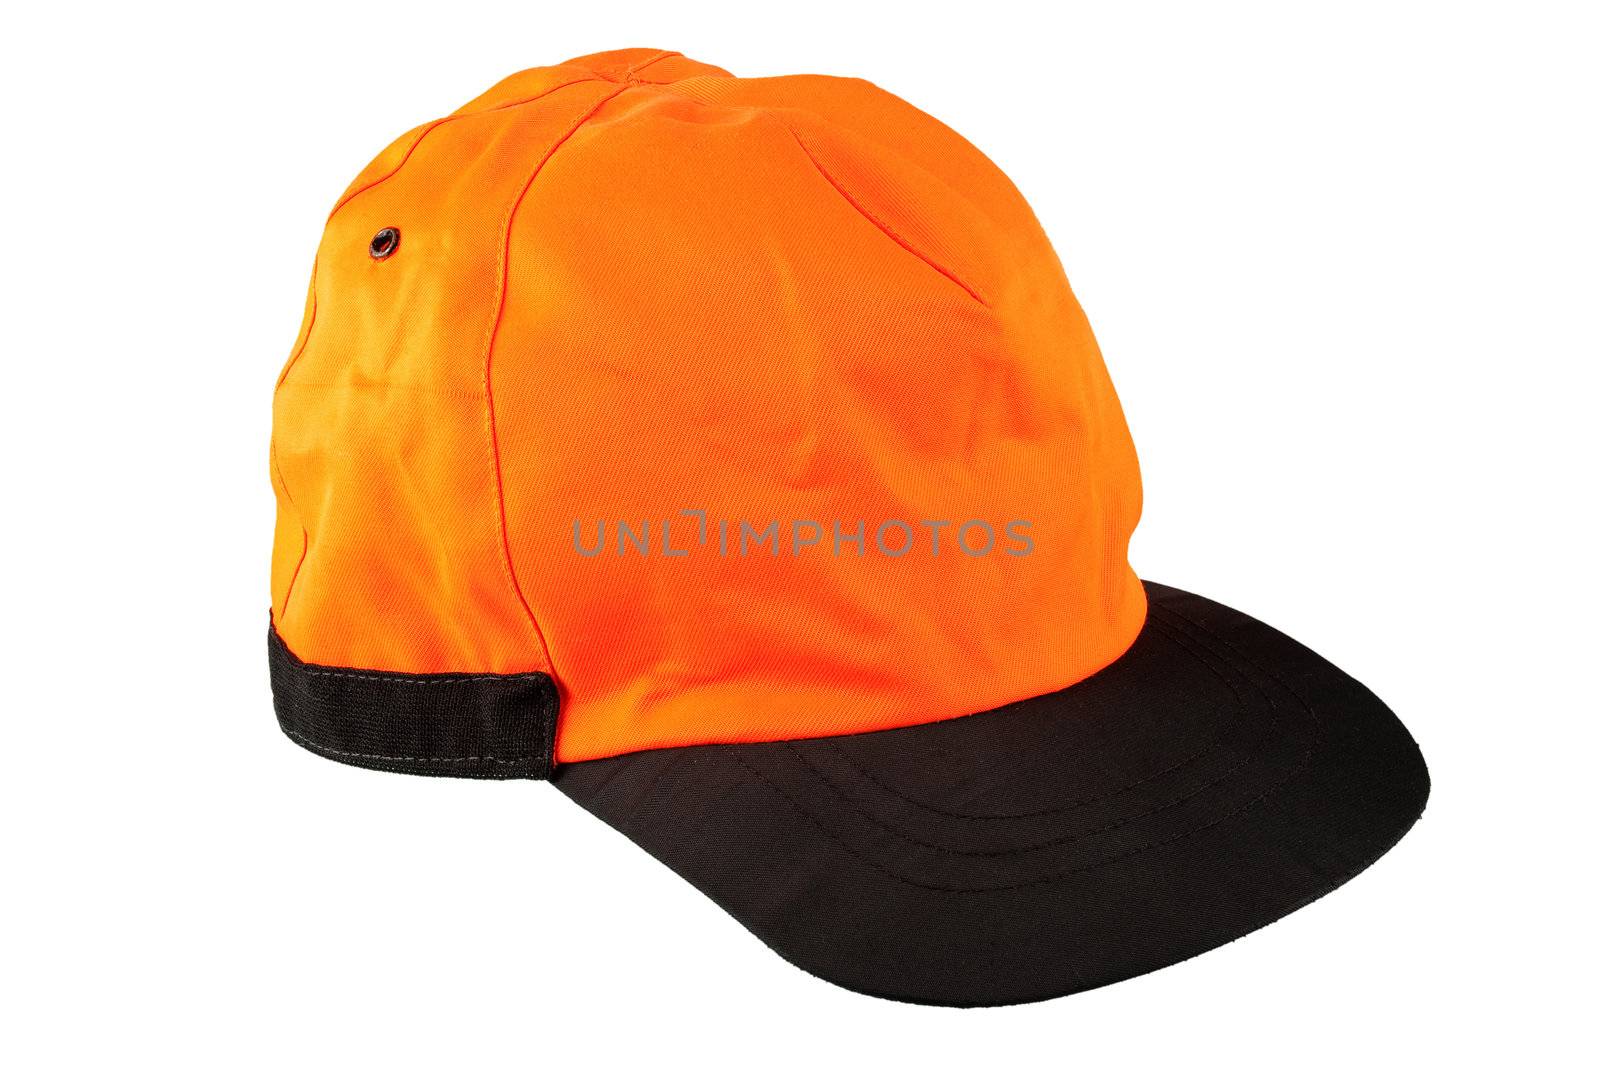 Orange cap isolated on white background